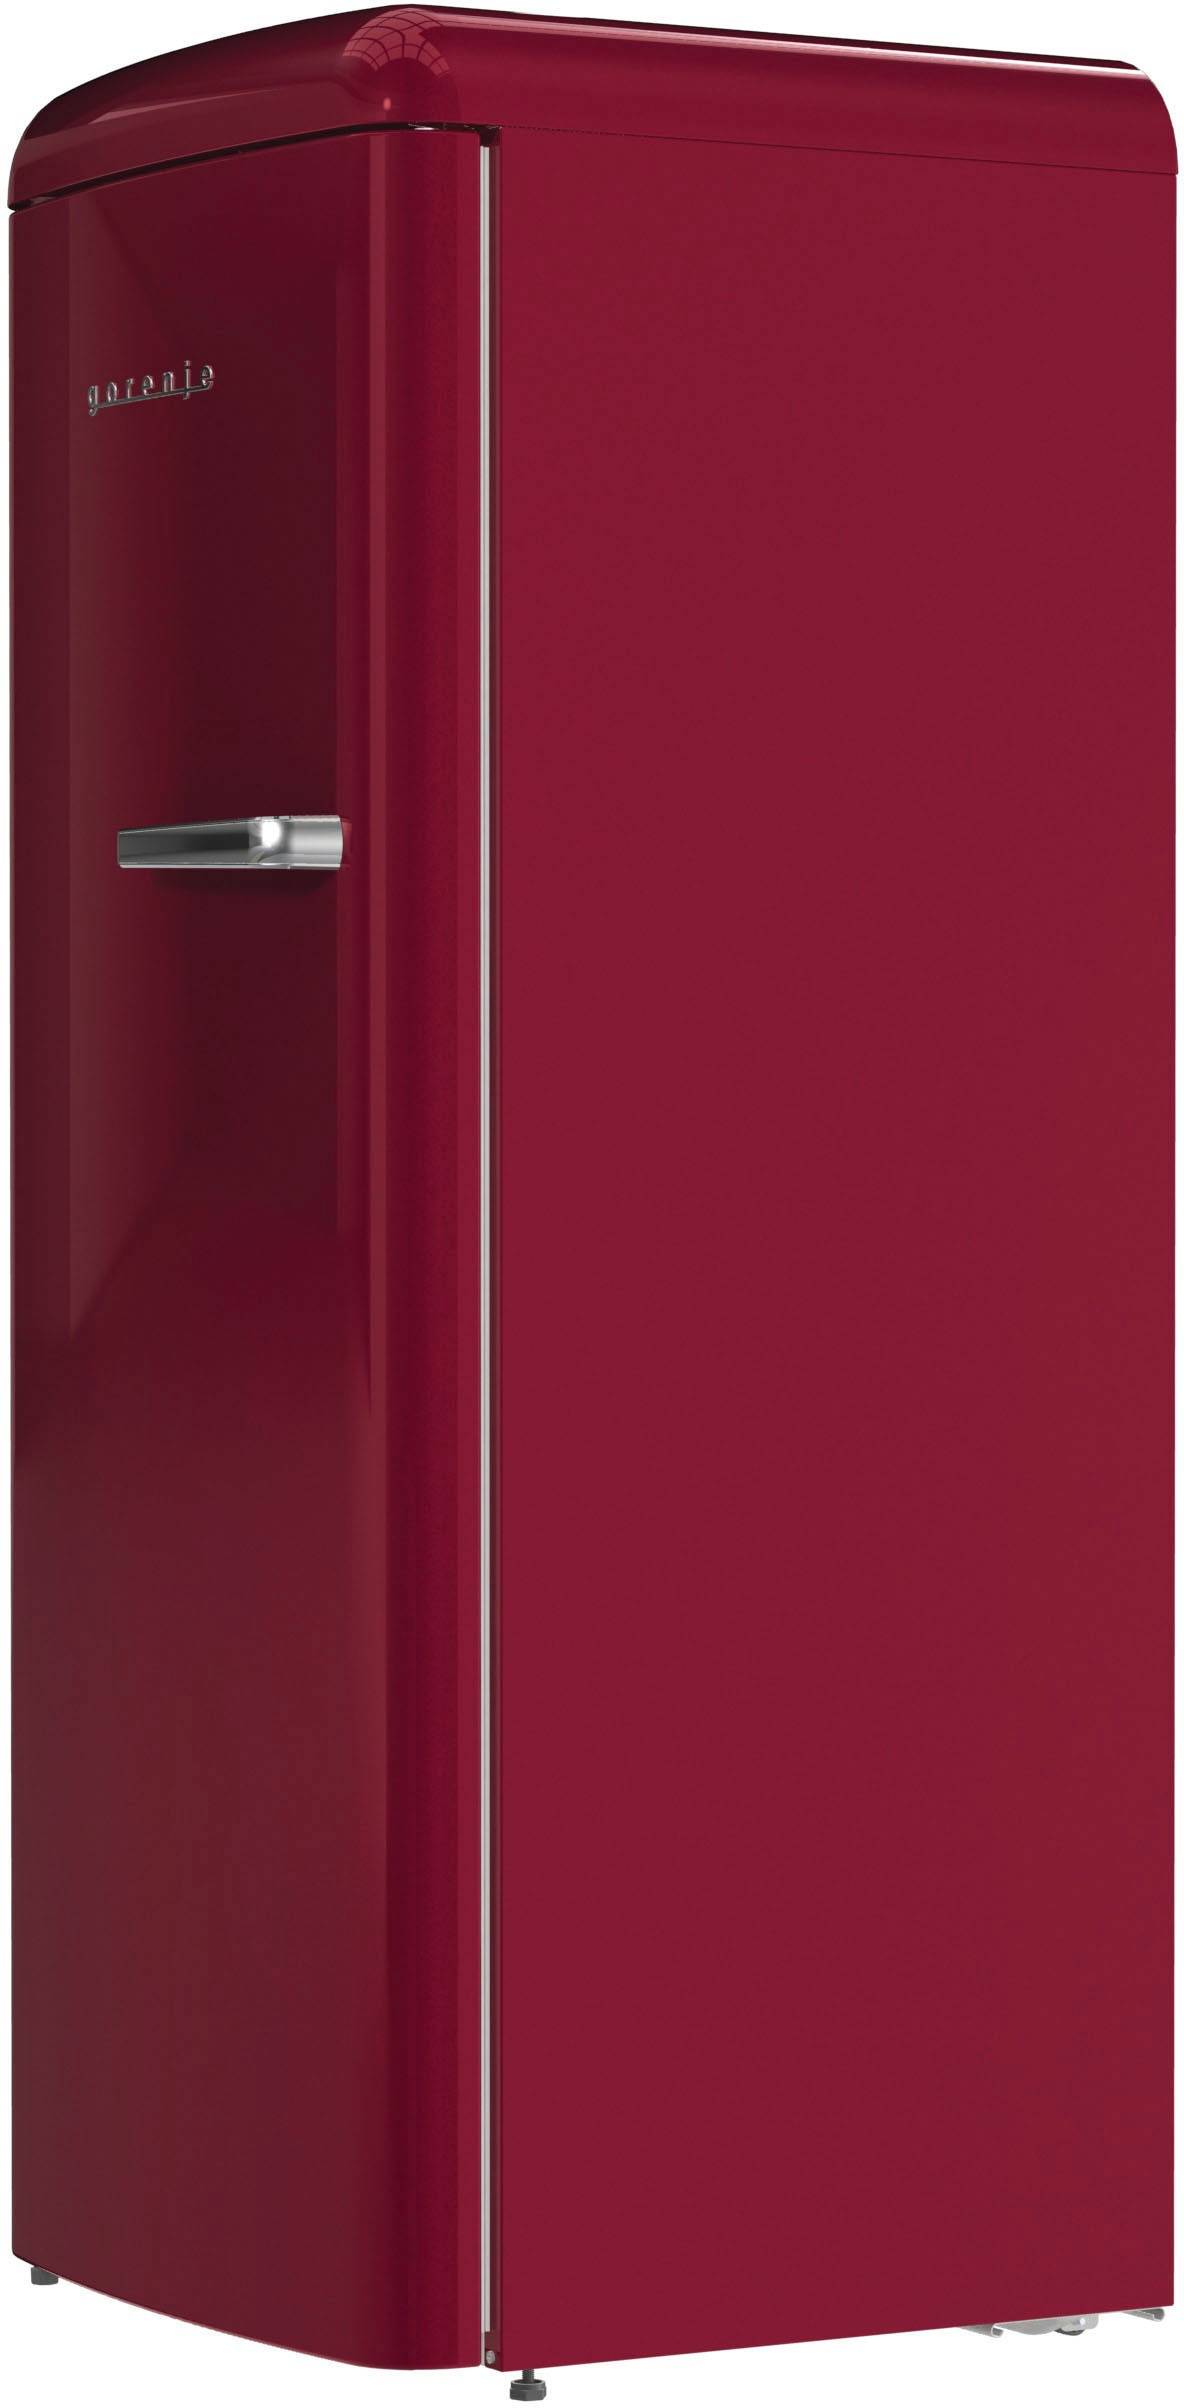 GORENJE Kühlschrank, ORB615DR-L, 152,5 cm hoch, 59,5 cm breit kaufen | Kühlschränke